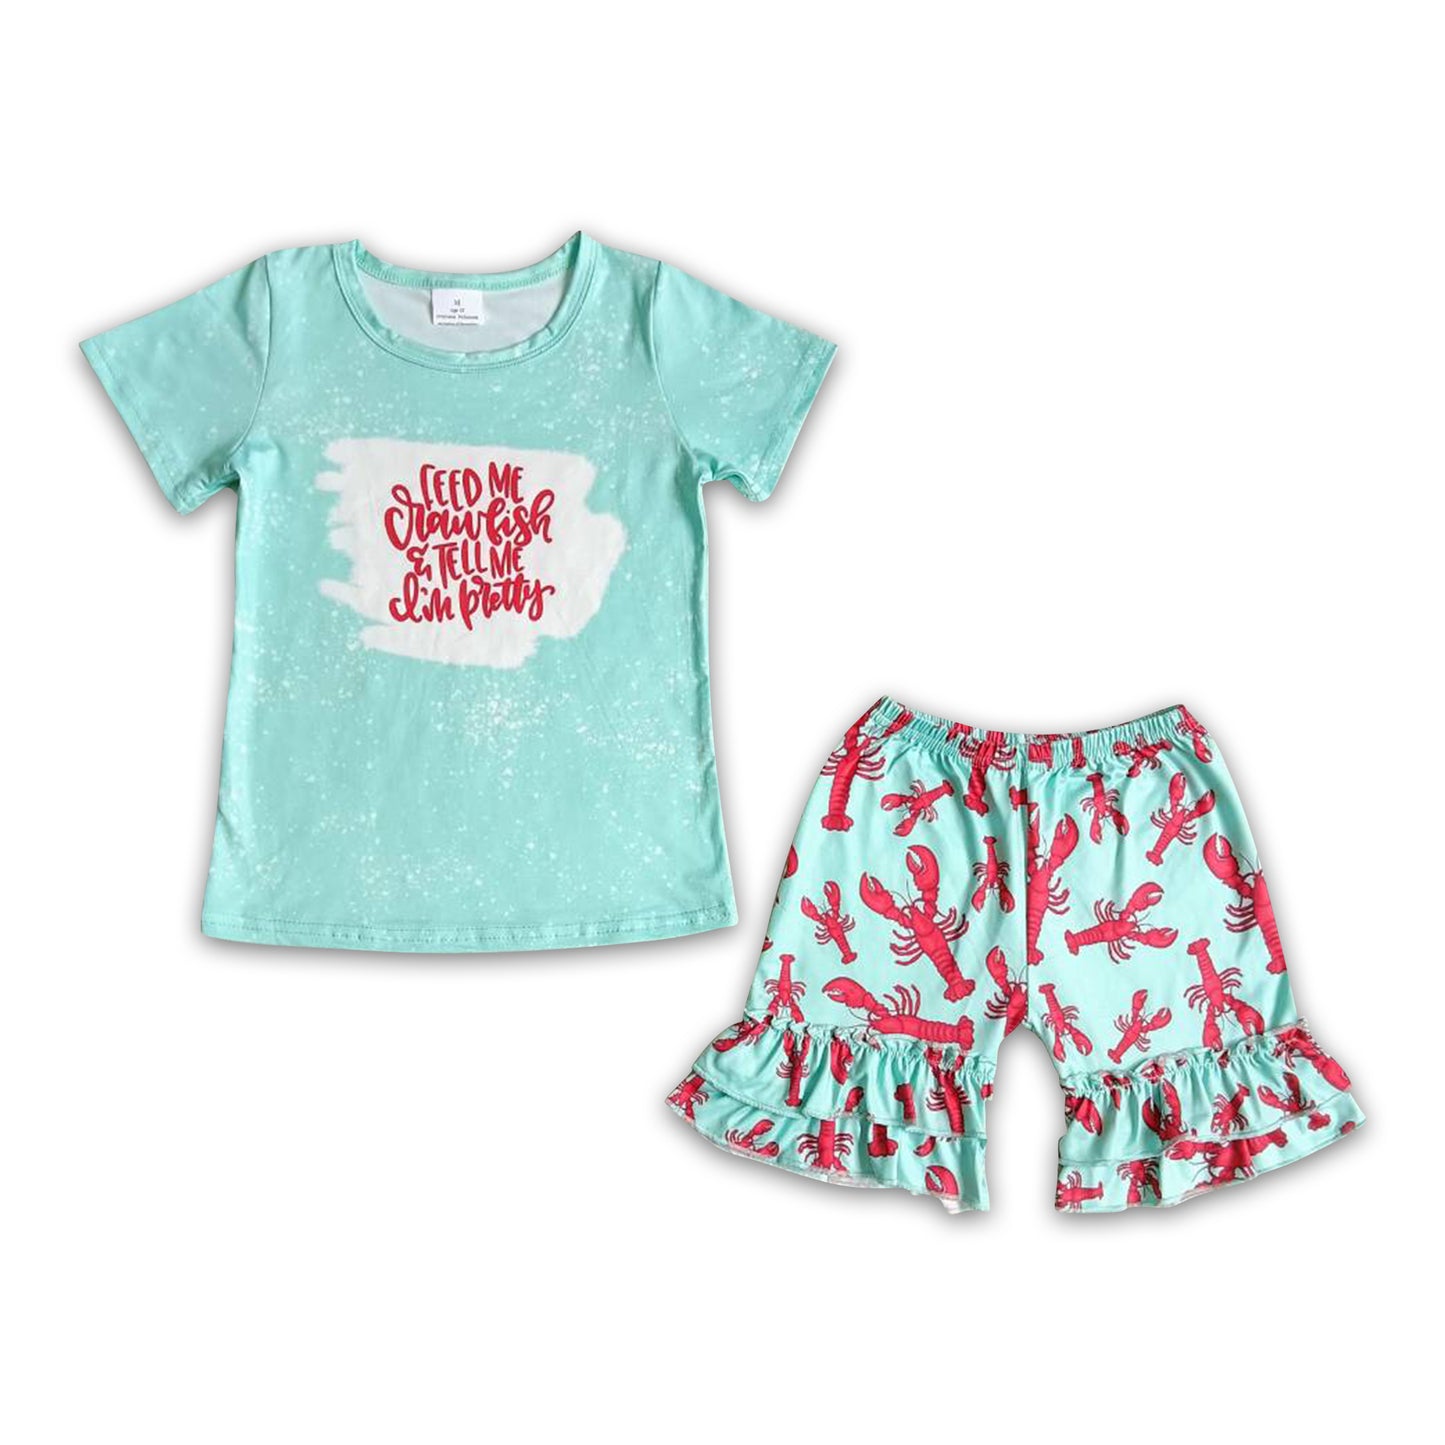 Crawfish shirt match ruffle shorts girls clothing set